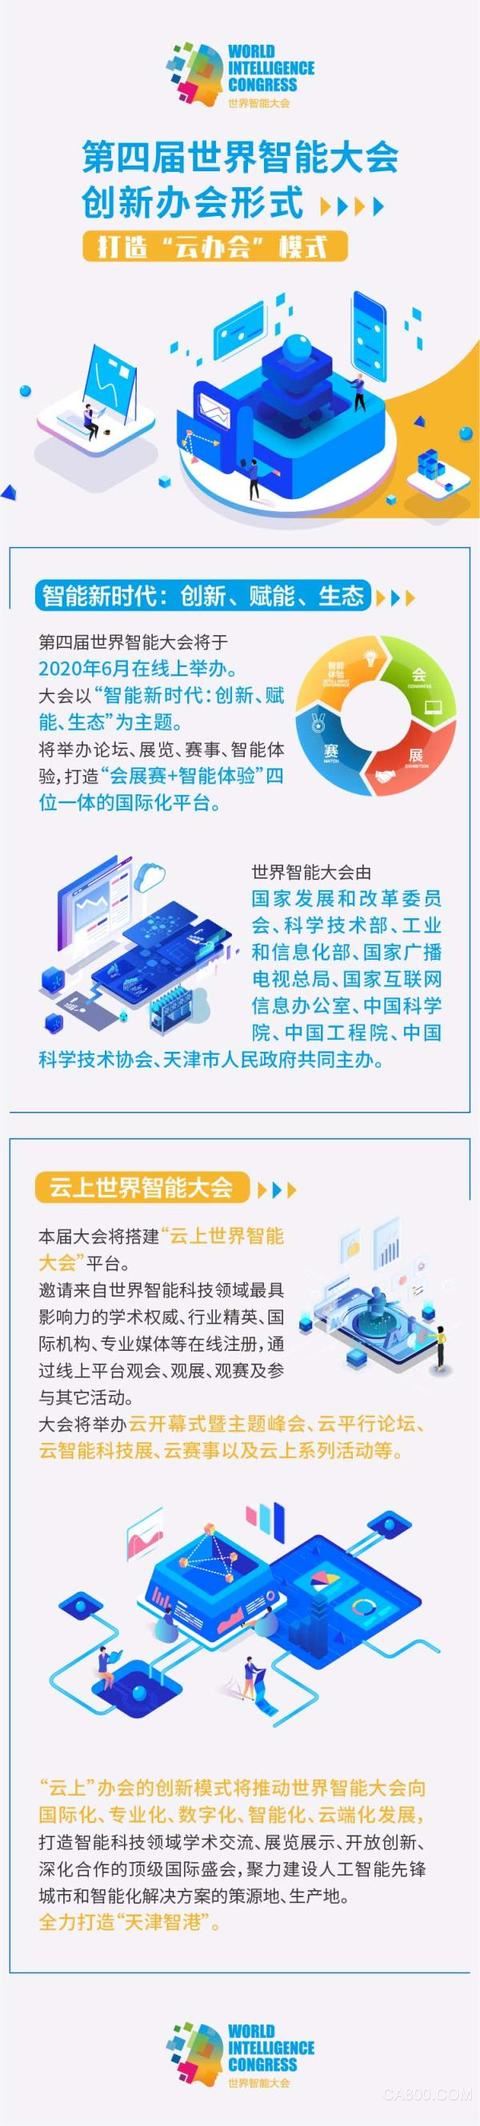 第四届世界智能大会6月将在天津开幕  大会将搭建“云上世界智能大会”平台